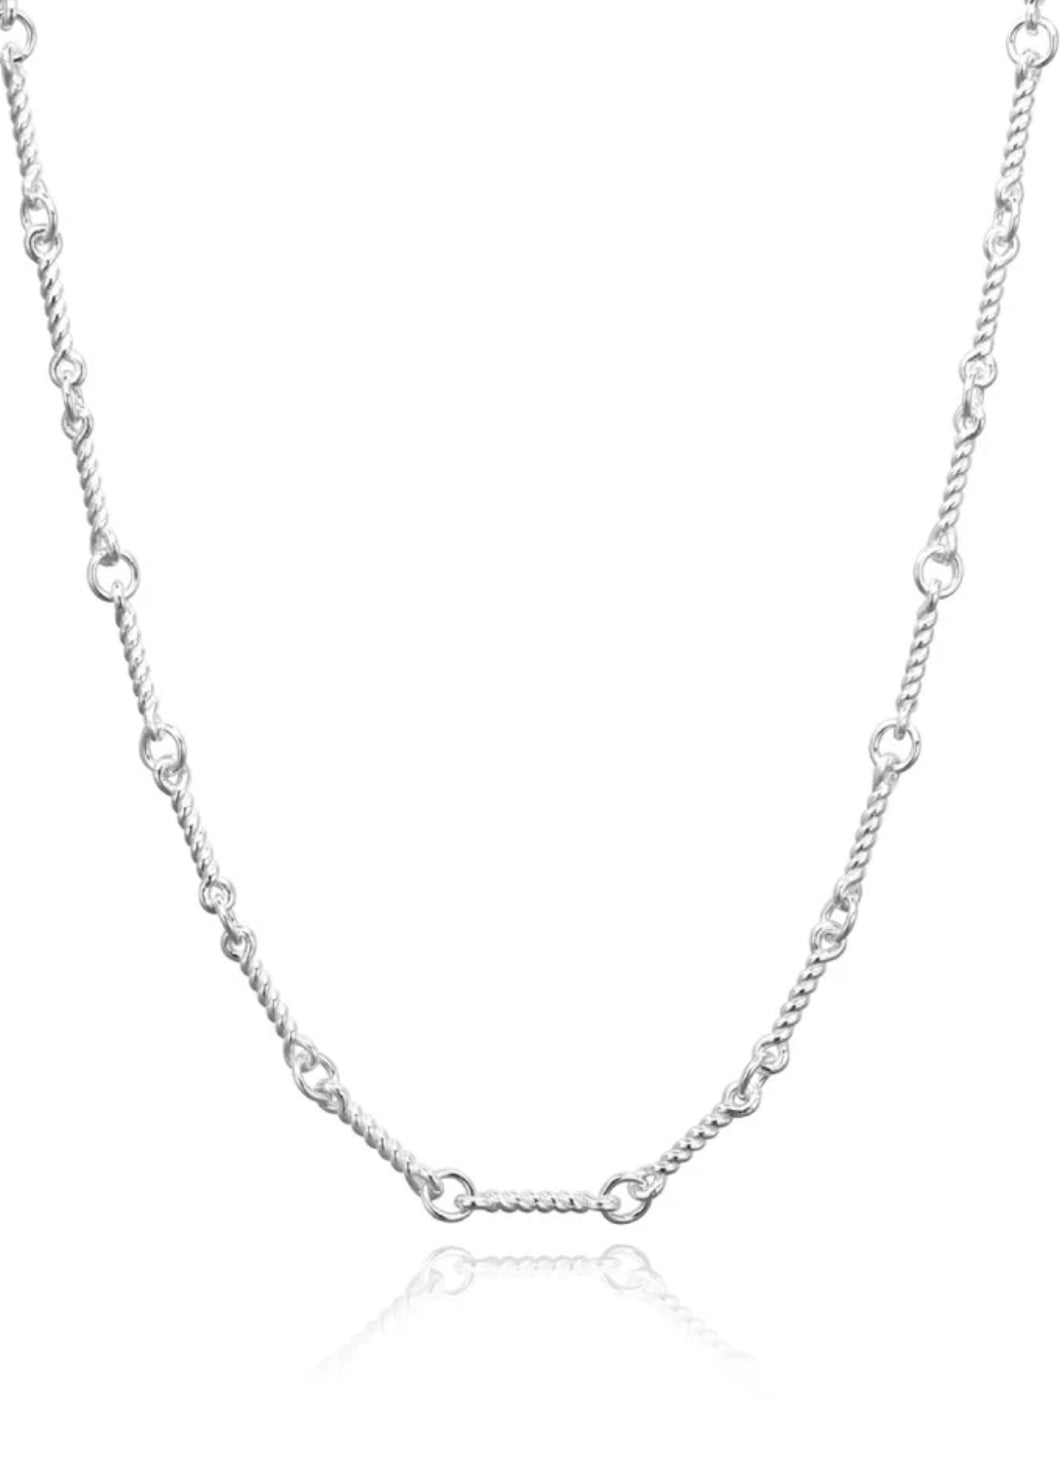 Luna necklace silver